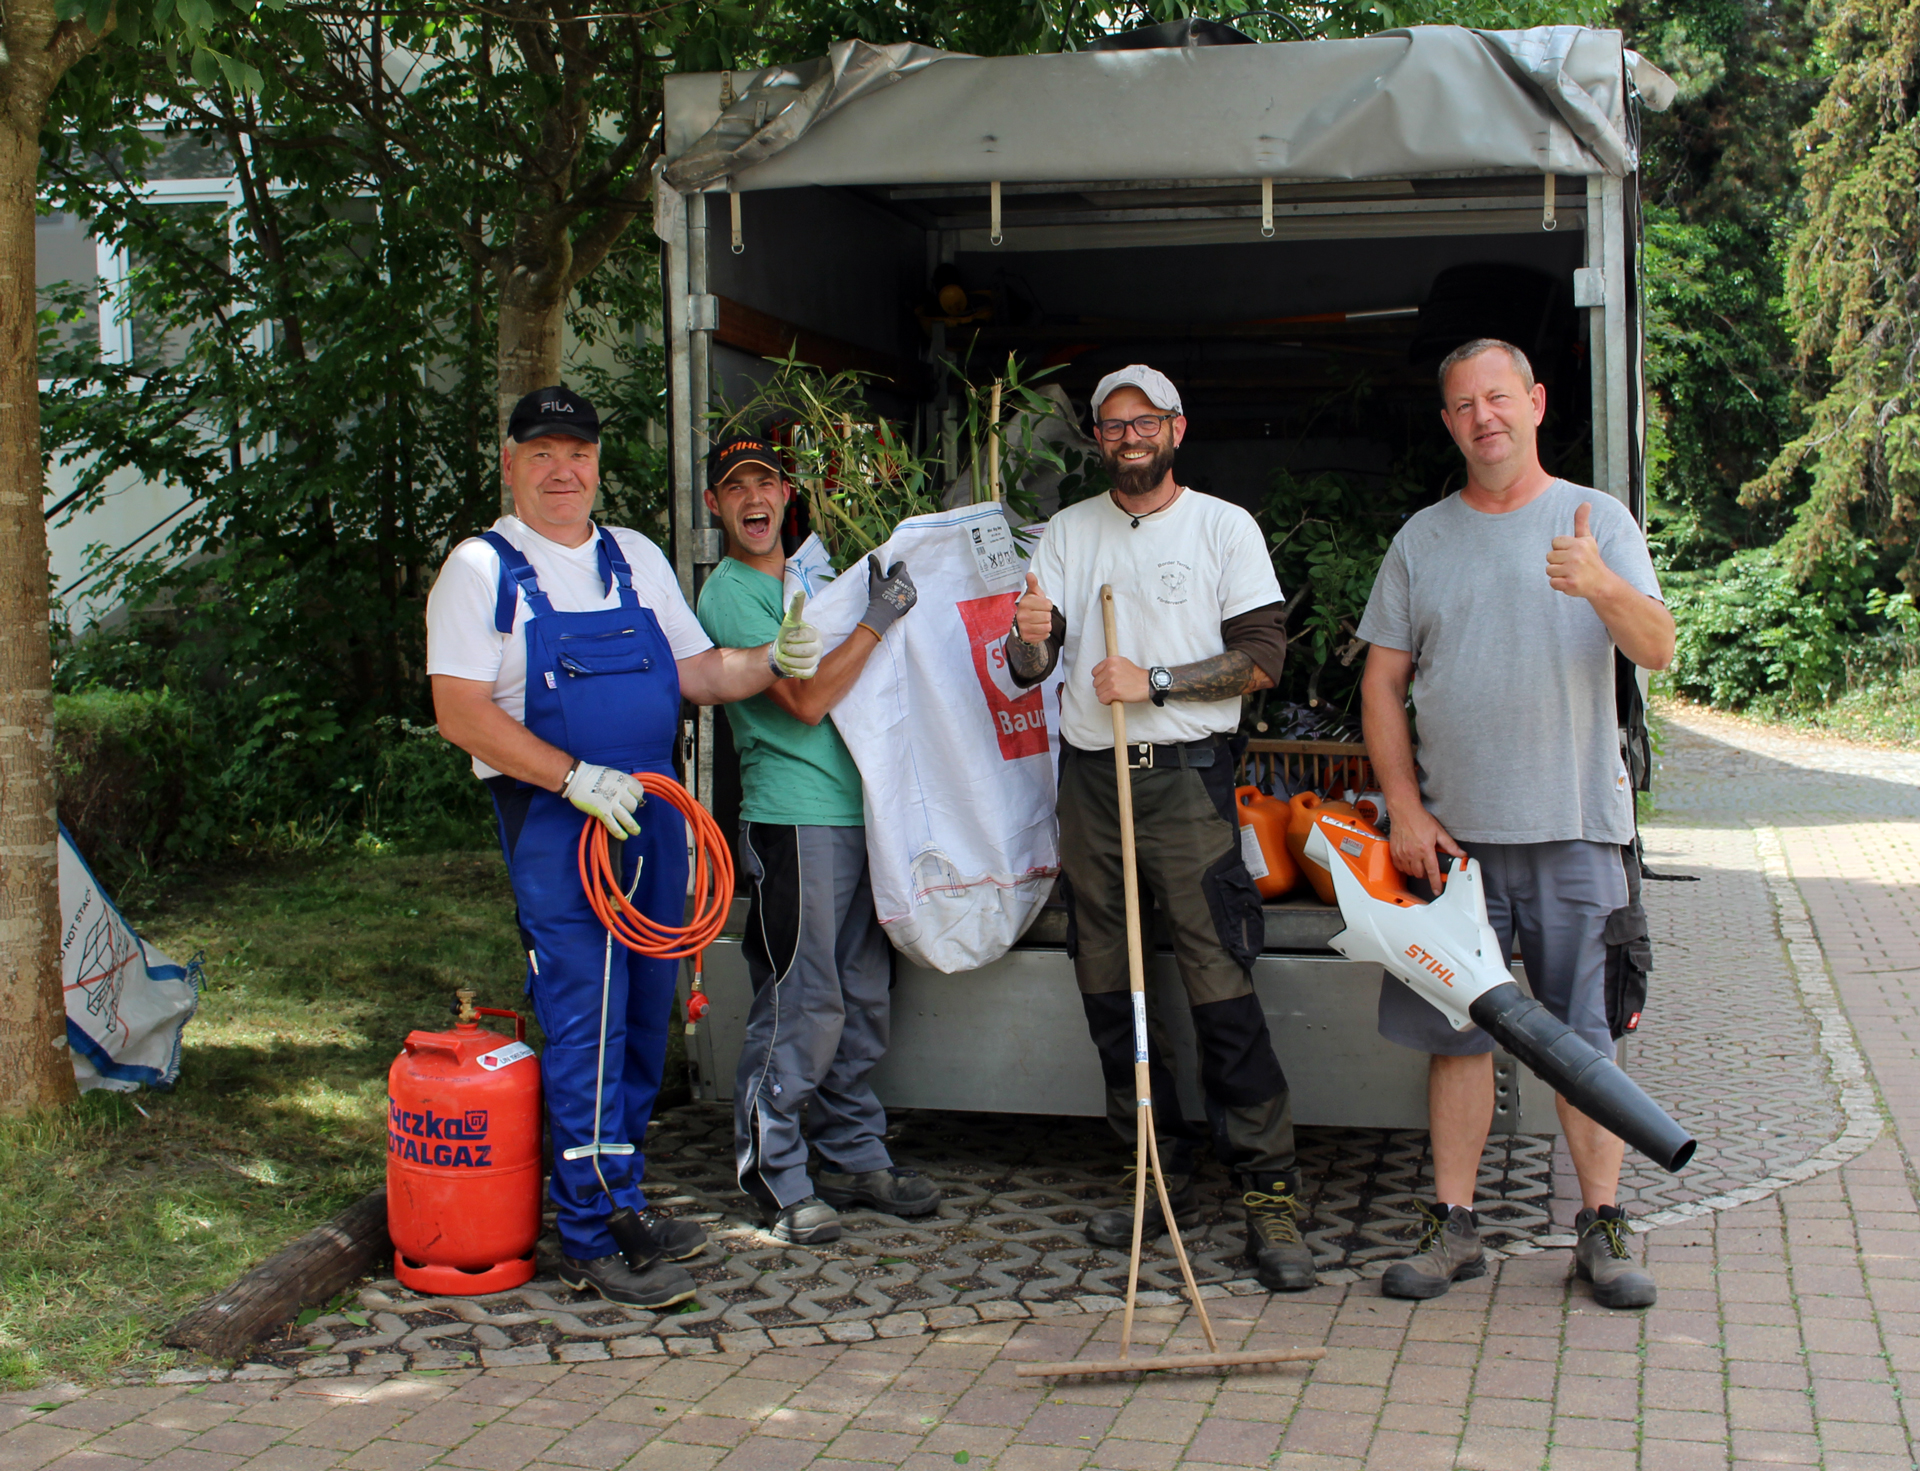 Im Bild: Vier Mitarbeiter der SBW Service stehen fröhlich an der Ladefläche eines Transporters. Sie halten Werkzeuge aus dem Gartenbau in den Armen und zeigen den Daumen hoch.